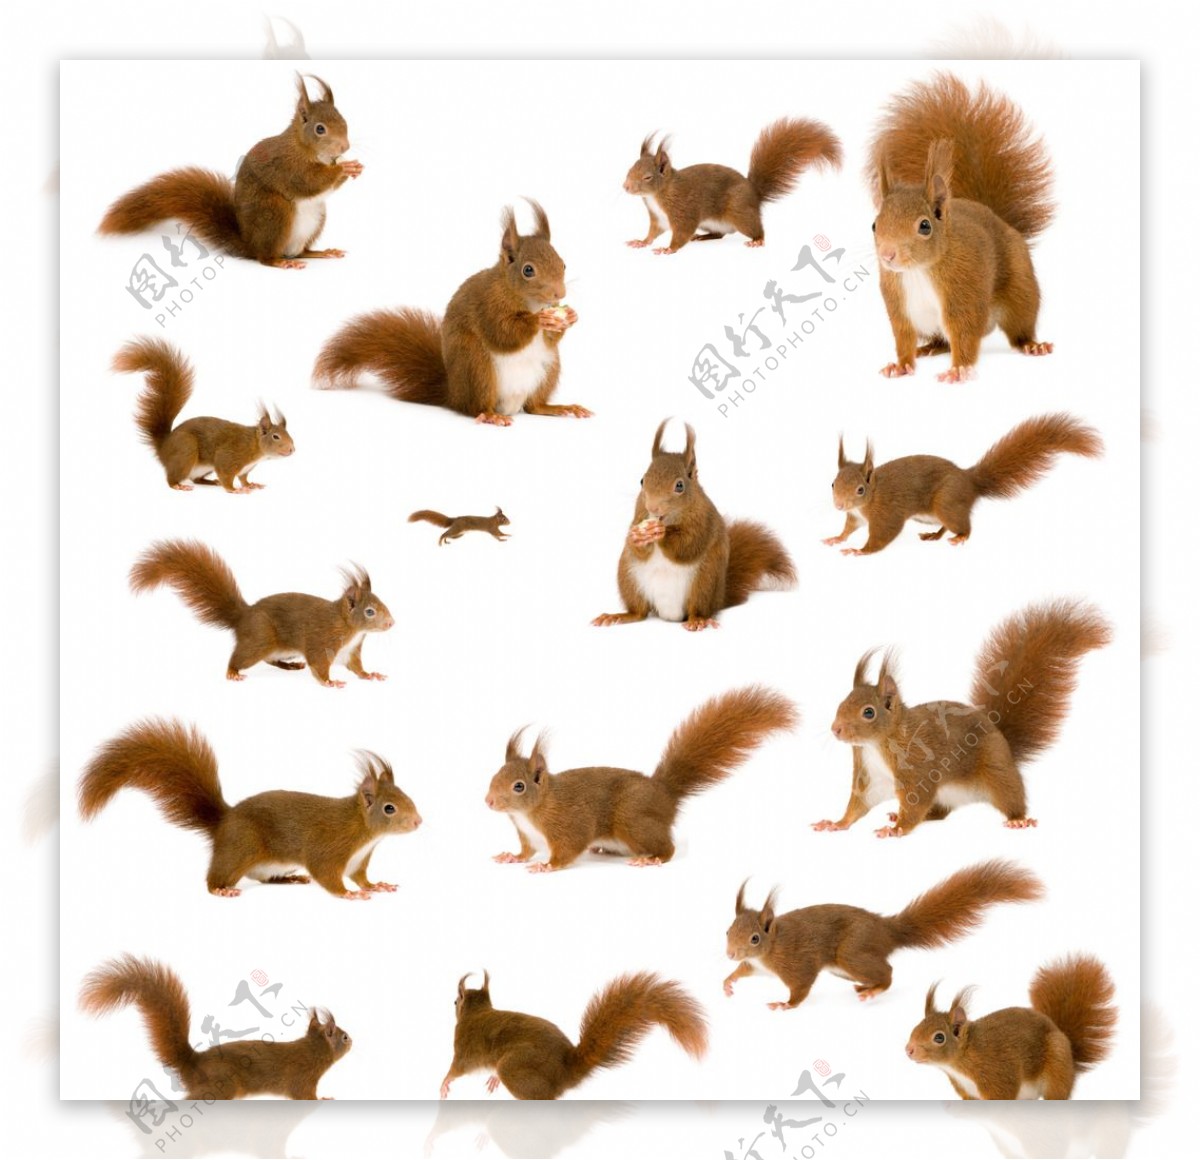 聪明伶俐的红褐色小松鼠图片高清壁纸-壁纸图片大全